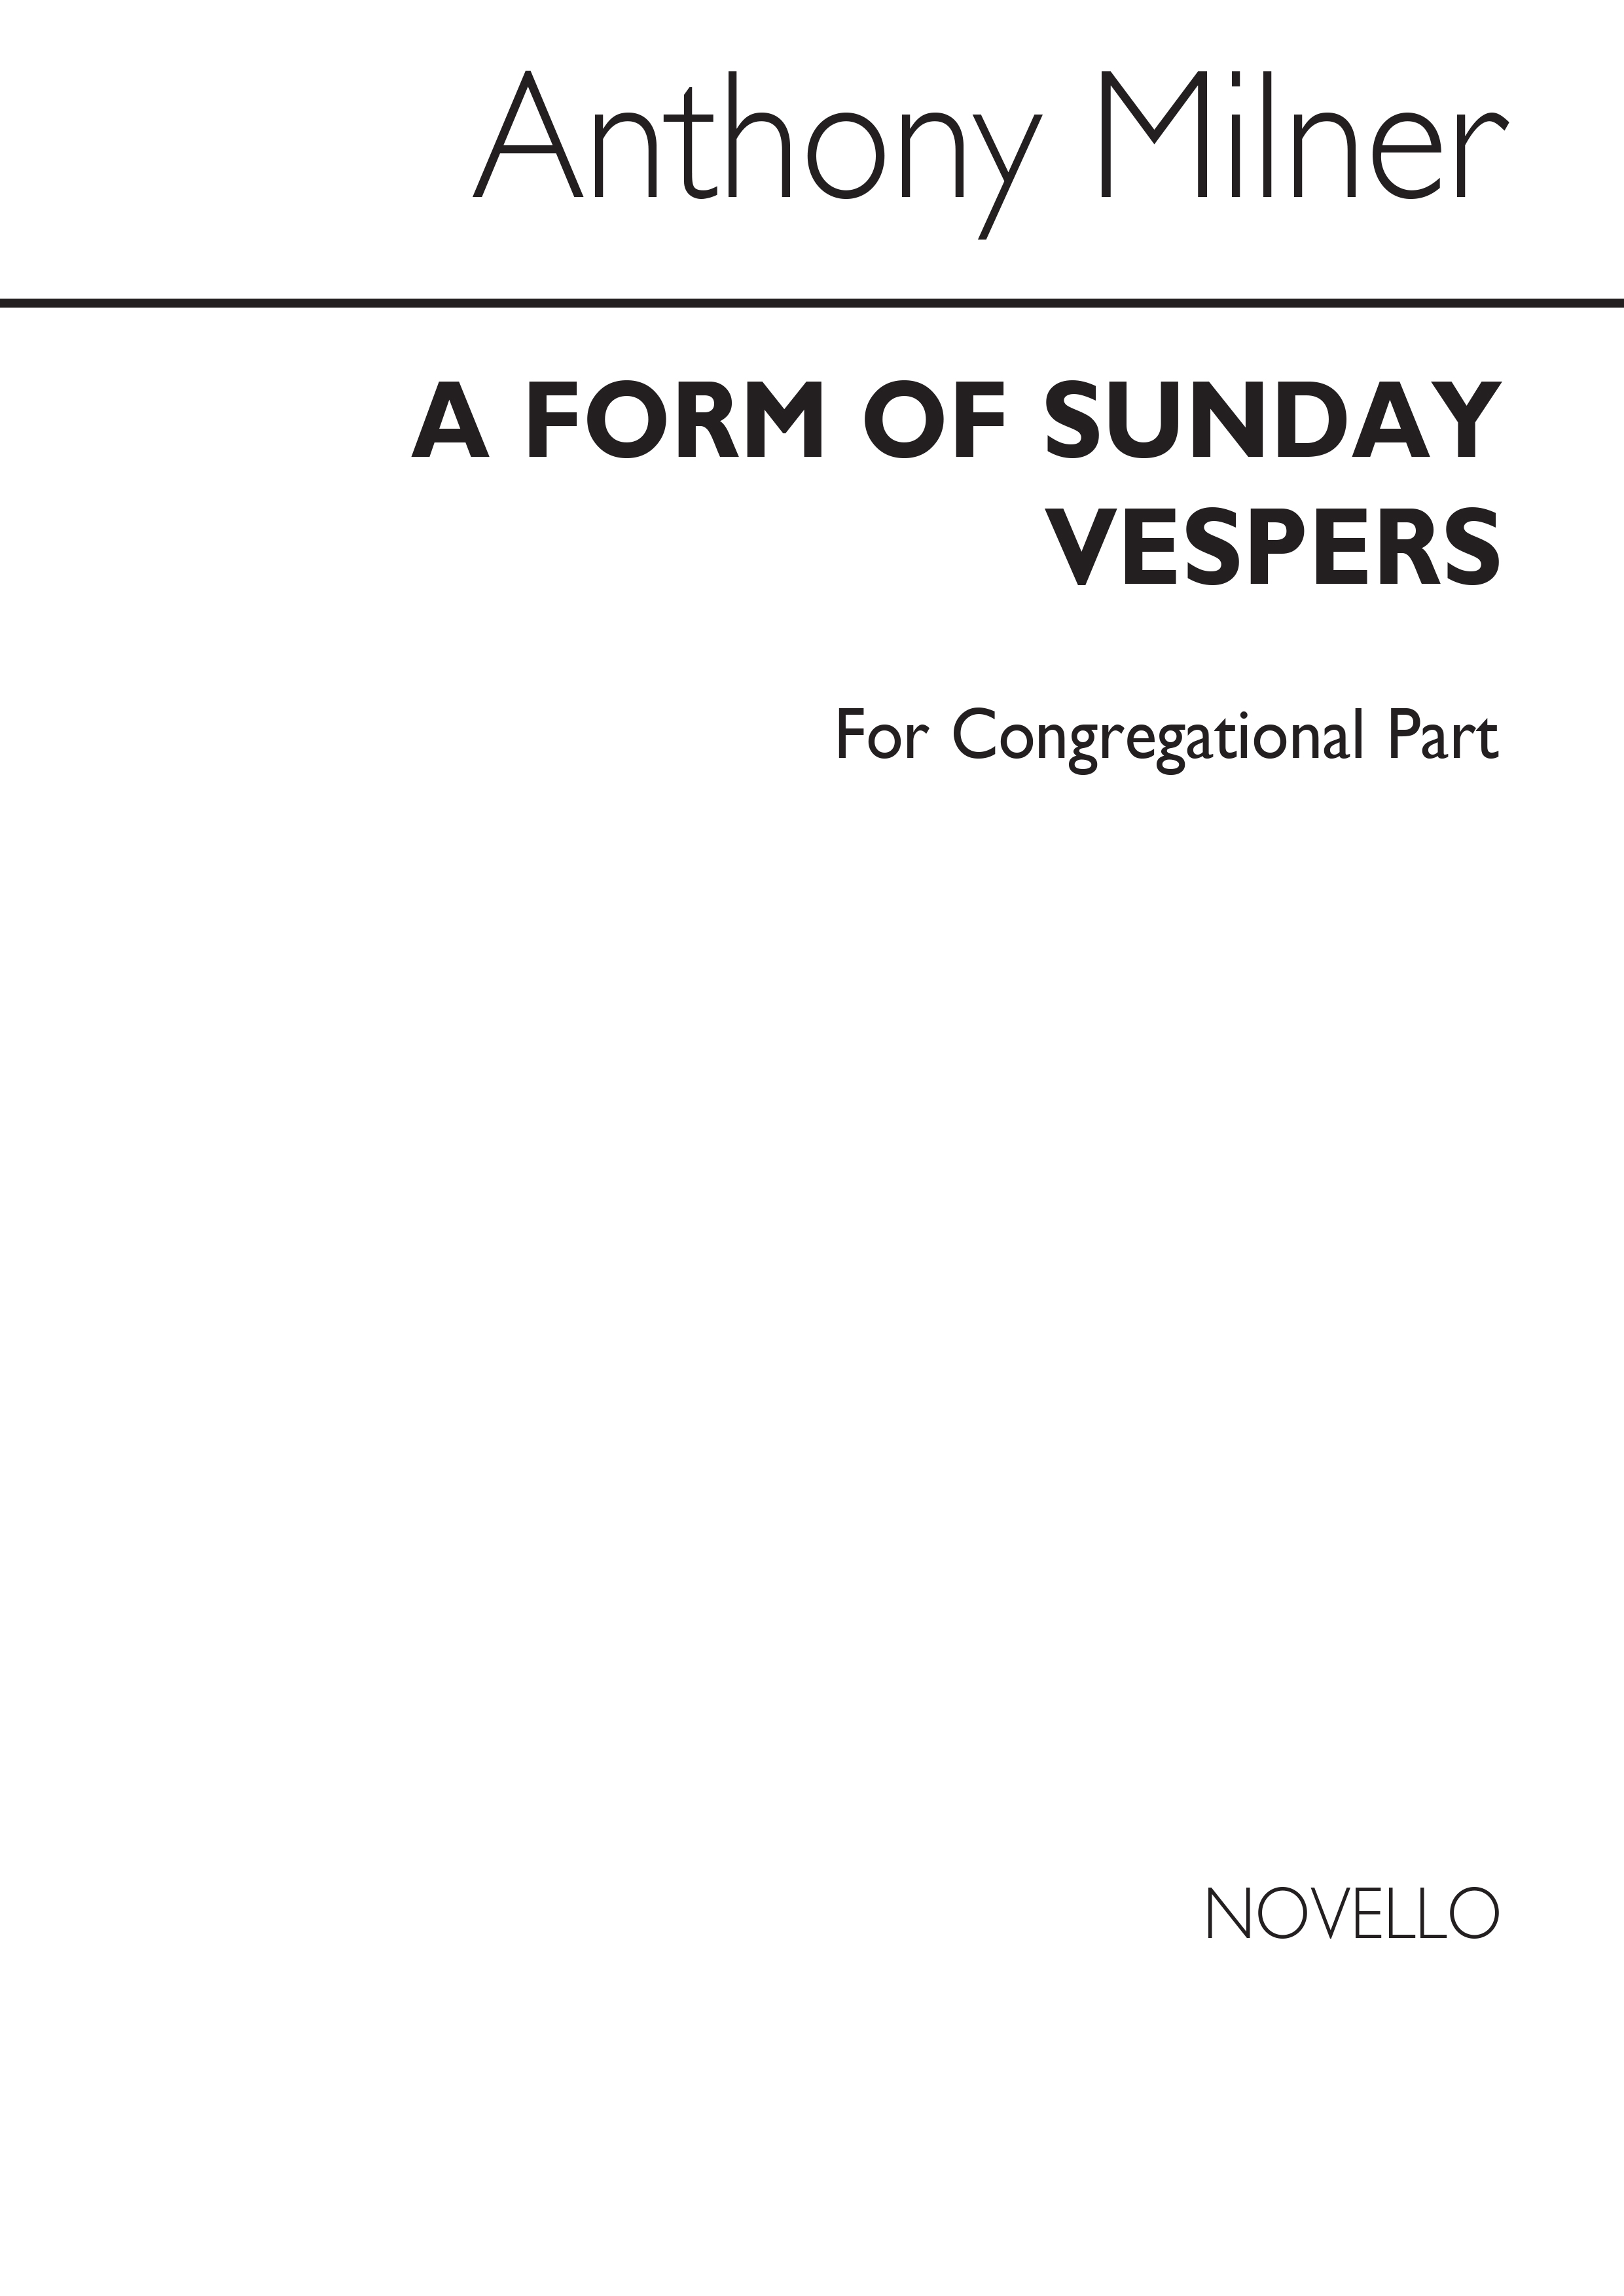 Anthony Milner: A Form Of Sunday Vespers (Congregational Part)